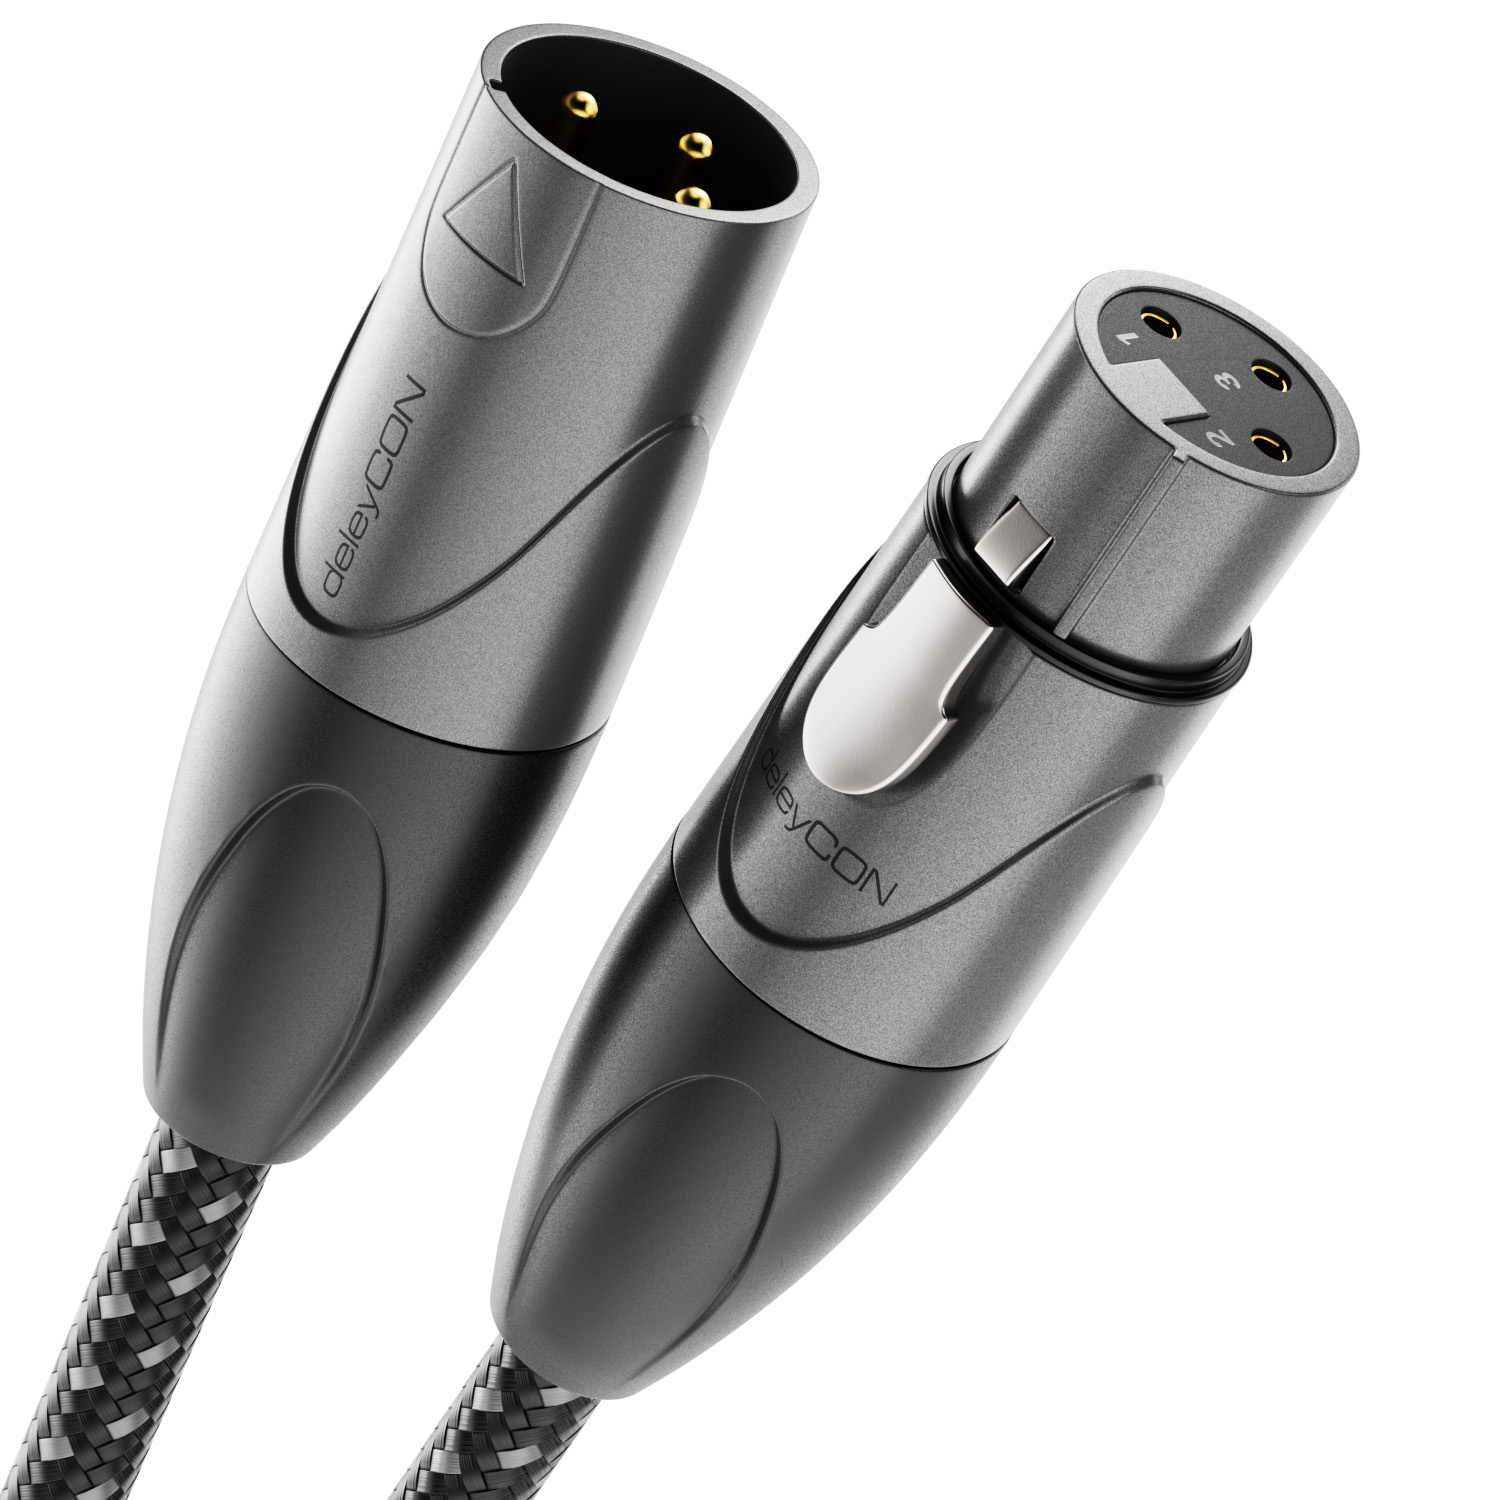 Profi 1m XLR Mikrofonkabel mit hochwertigem Stecker und Schirmung in schwarz 